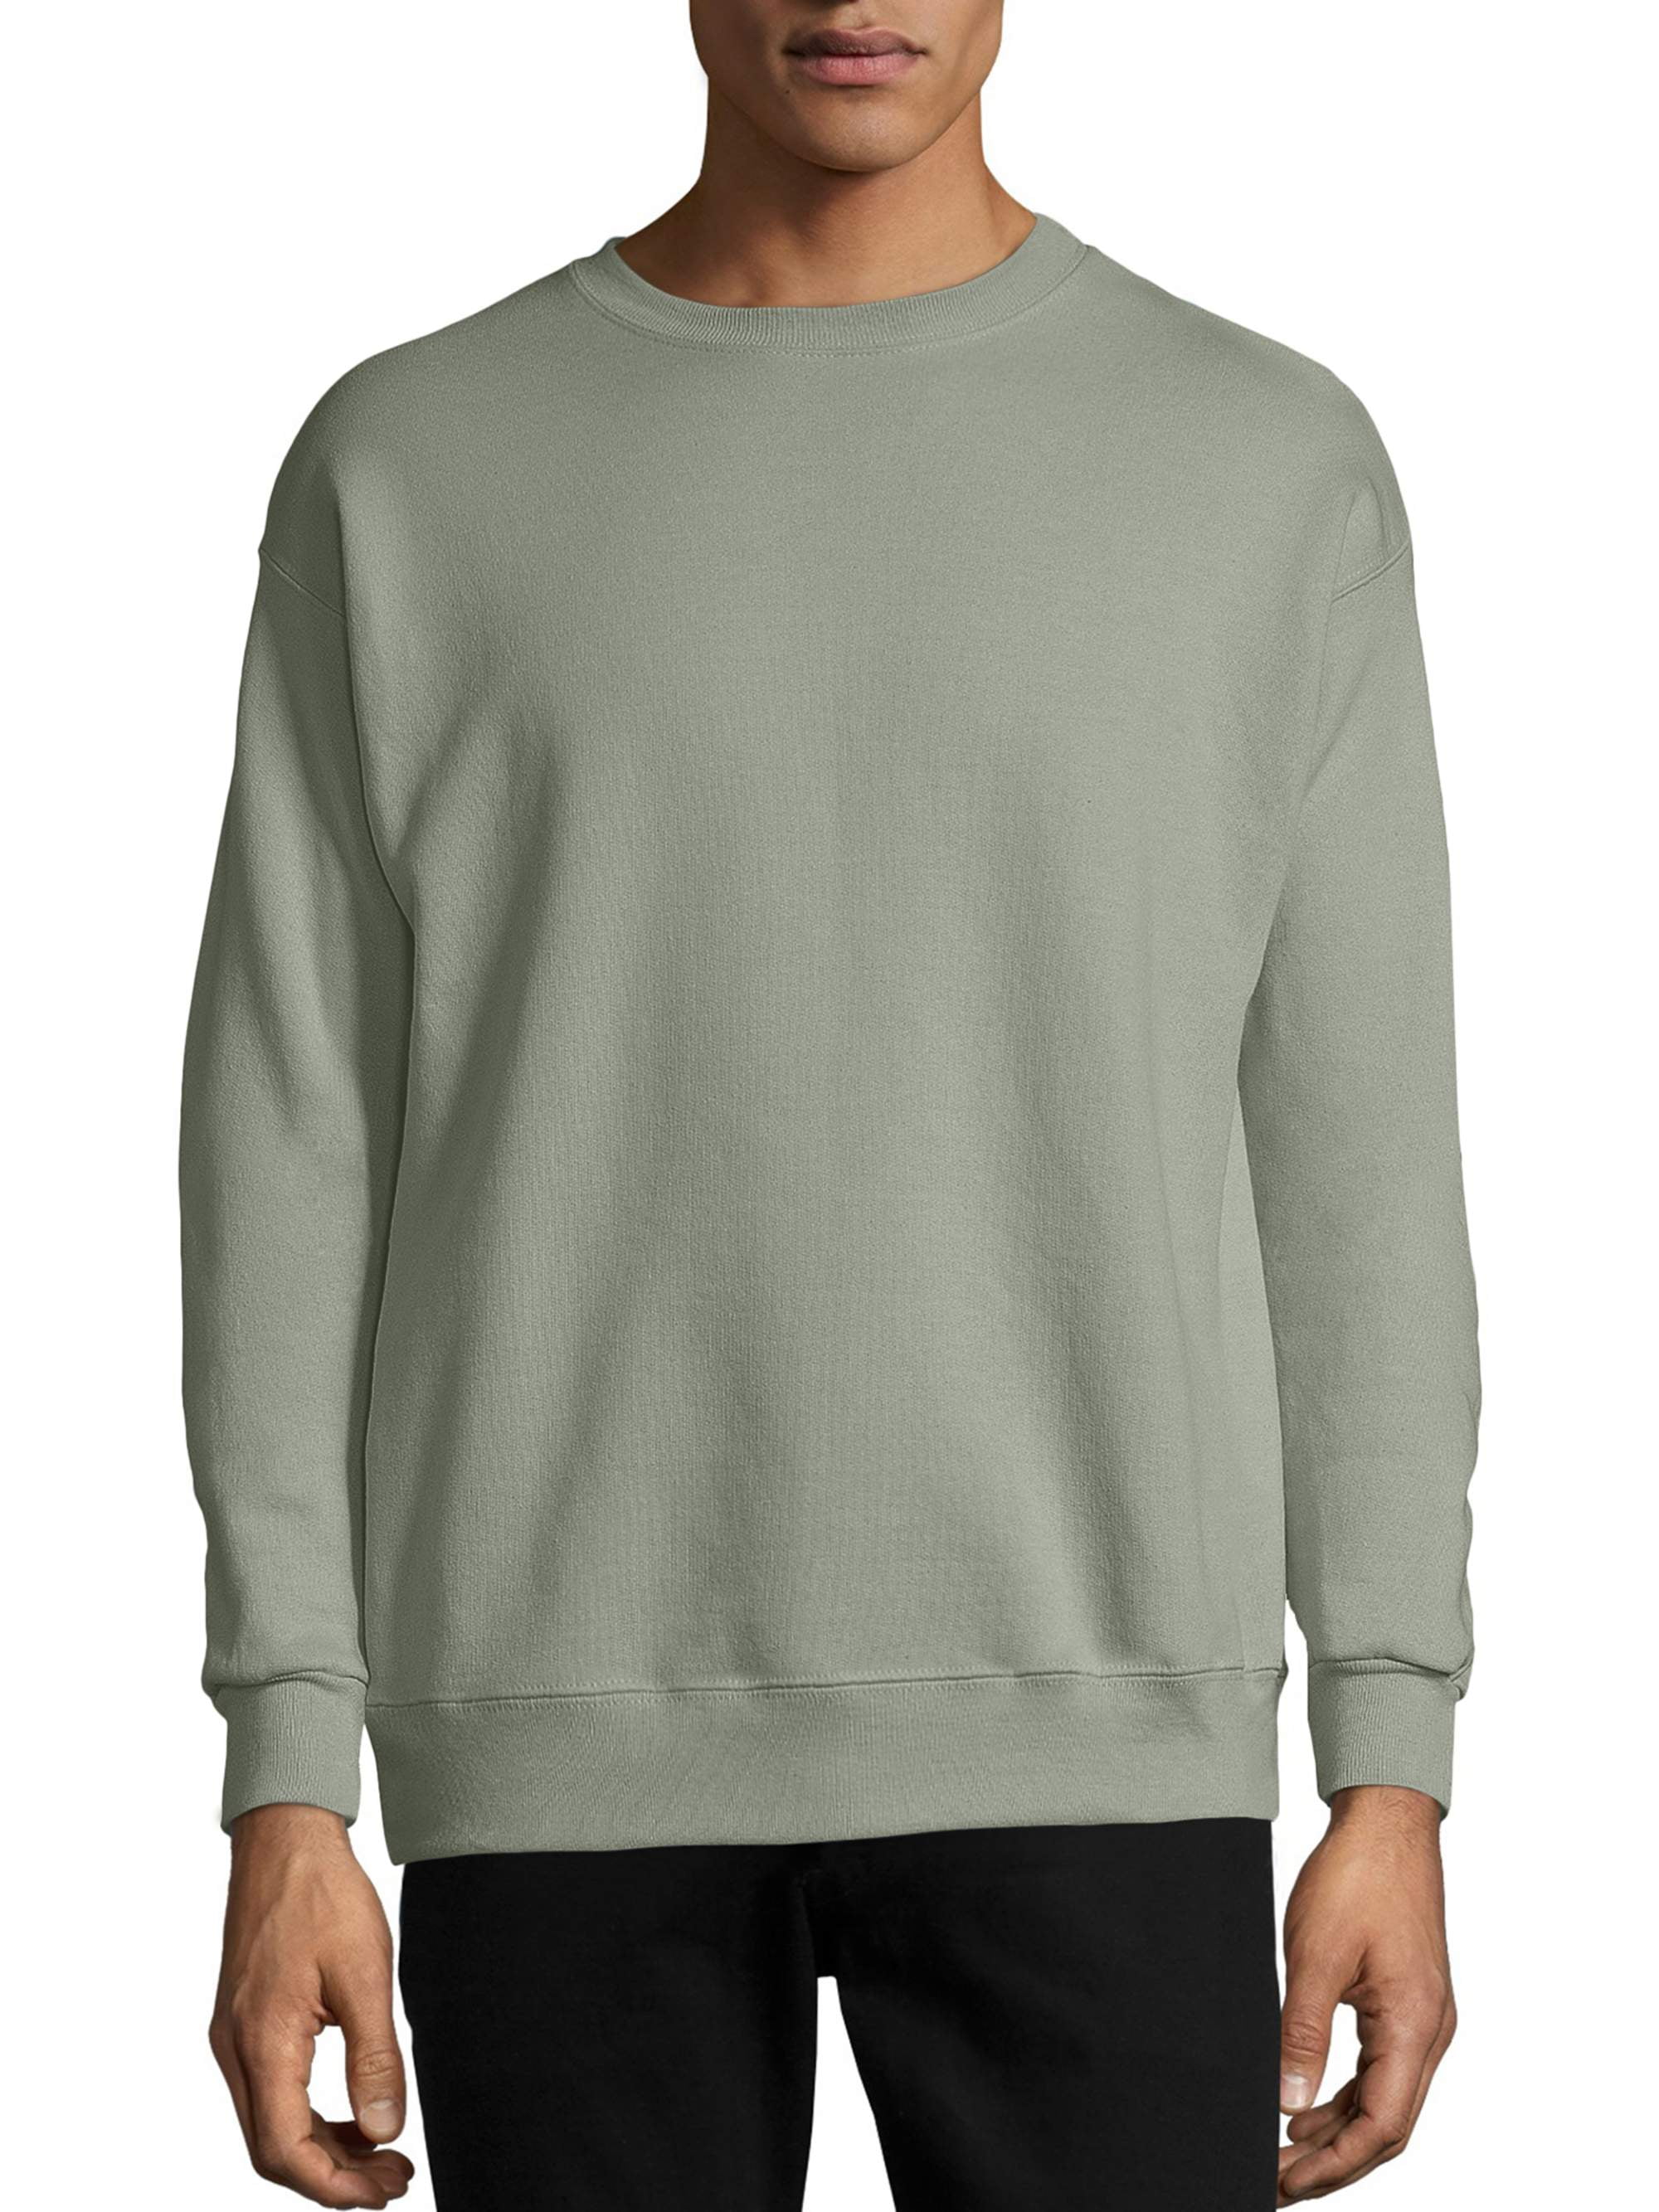 Hanes Mens Ecosmart Fleece Sweatshirt 